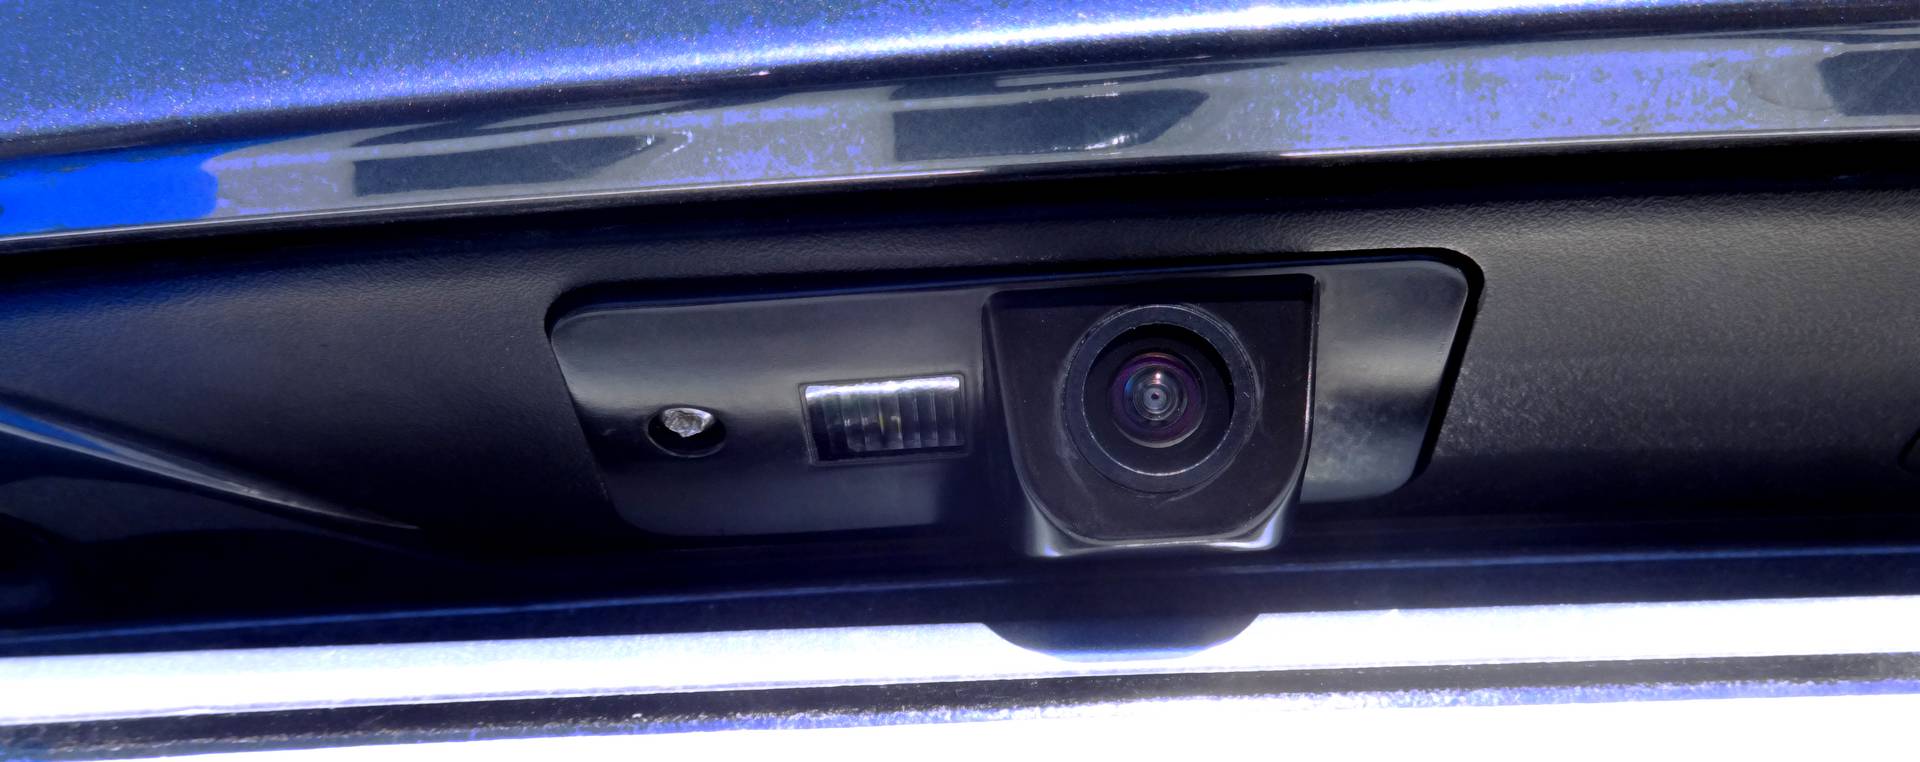 La telecamera posteriore installata nell'auto.